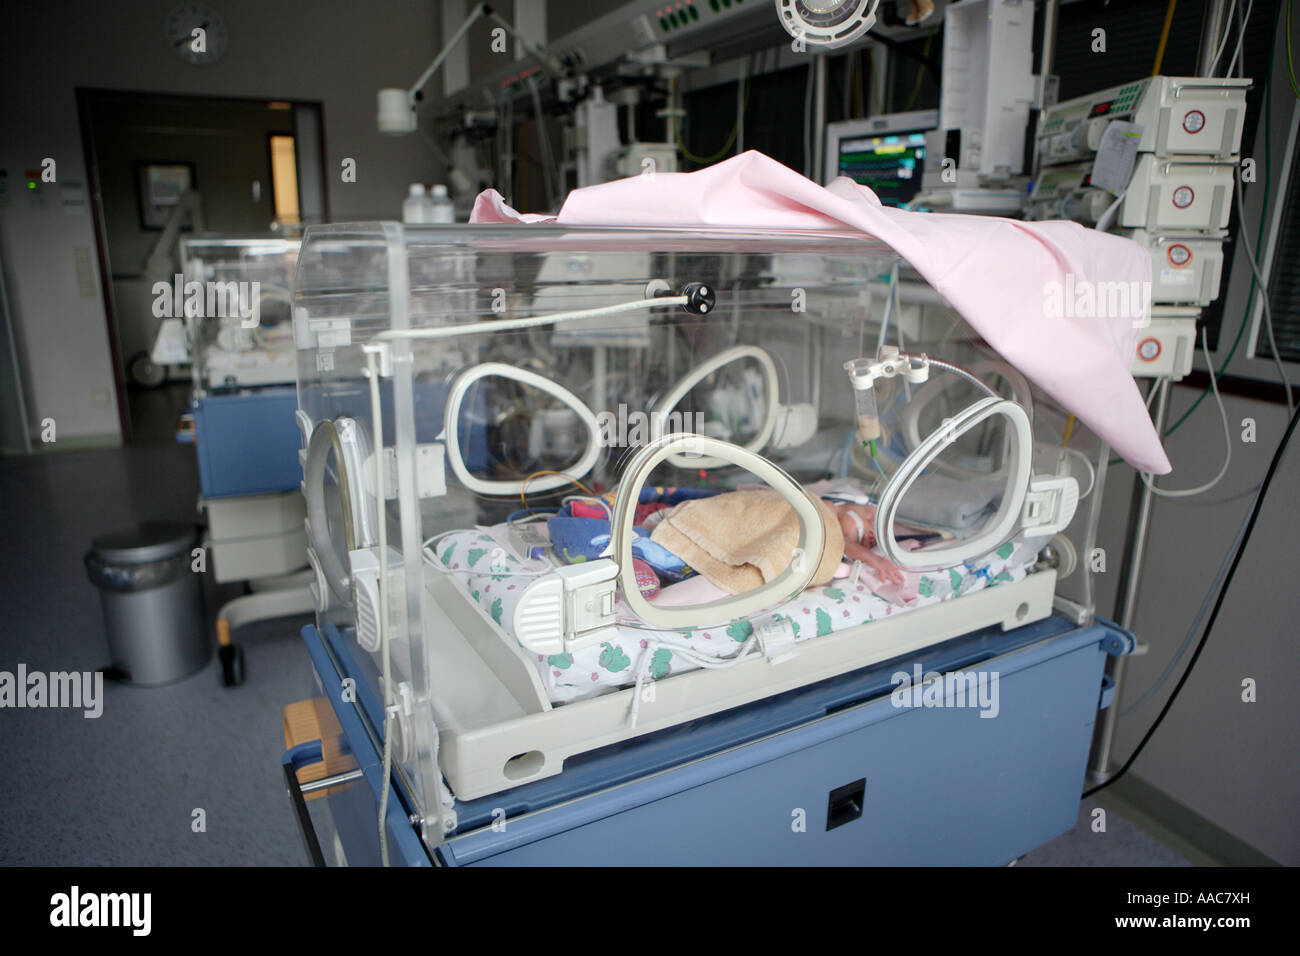 Altona centre hospitalier pour enfants de l'unité de soins intensifs pour les naissances prématurées Banque D'Images